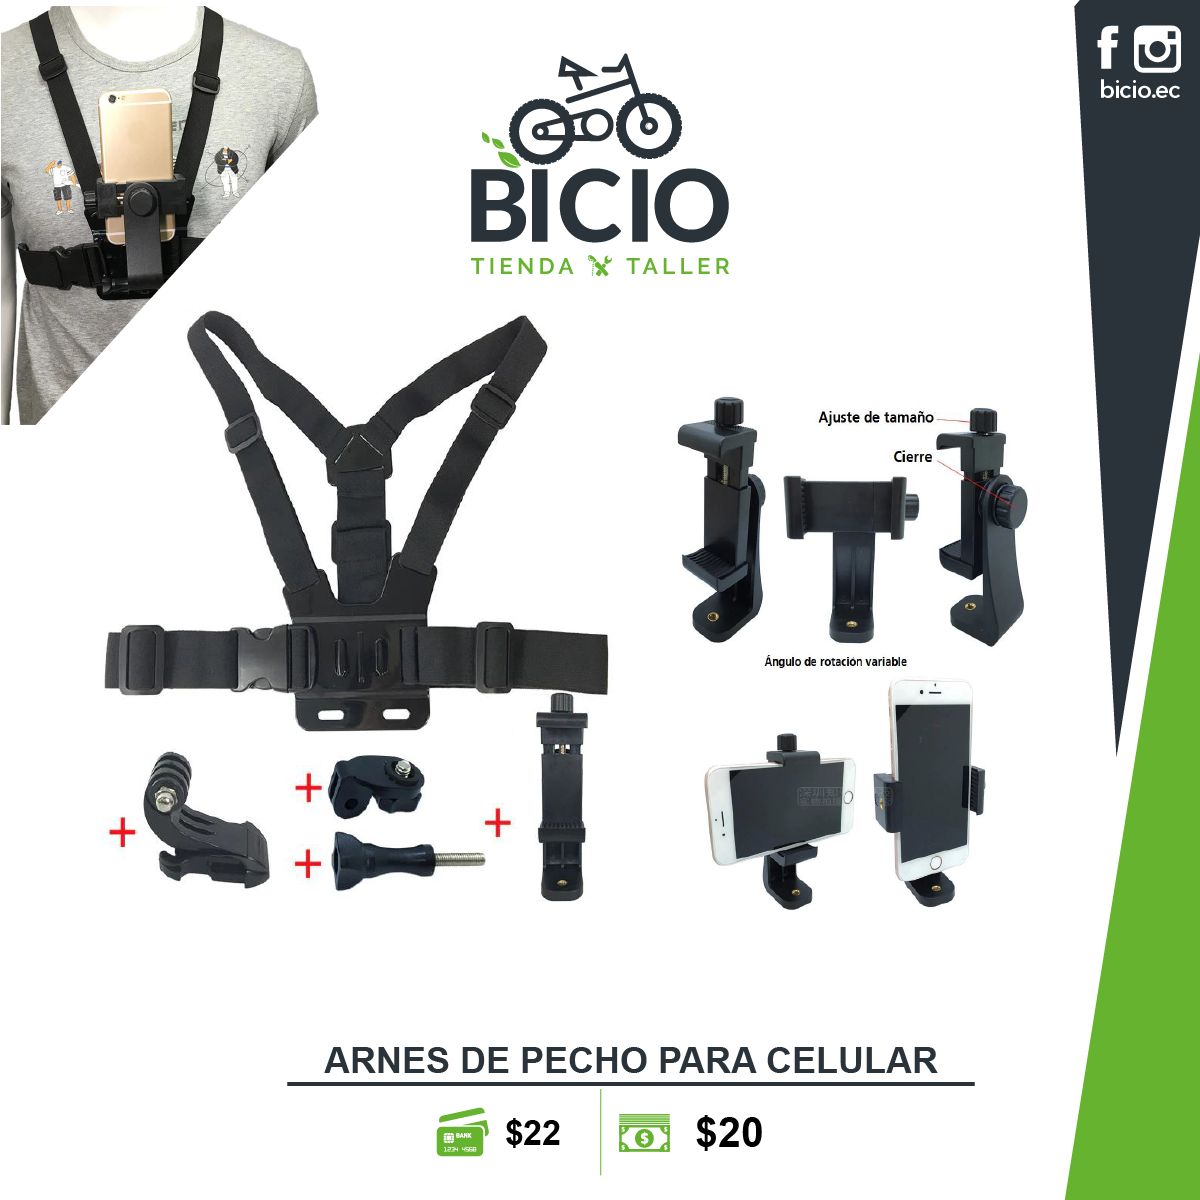 Arnés de pecho para celular y Gopro - Bicio tienda - taller de bicicletas